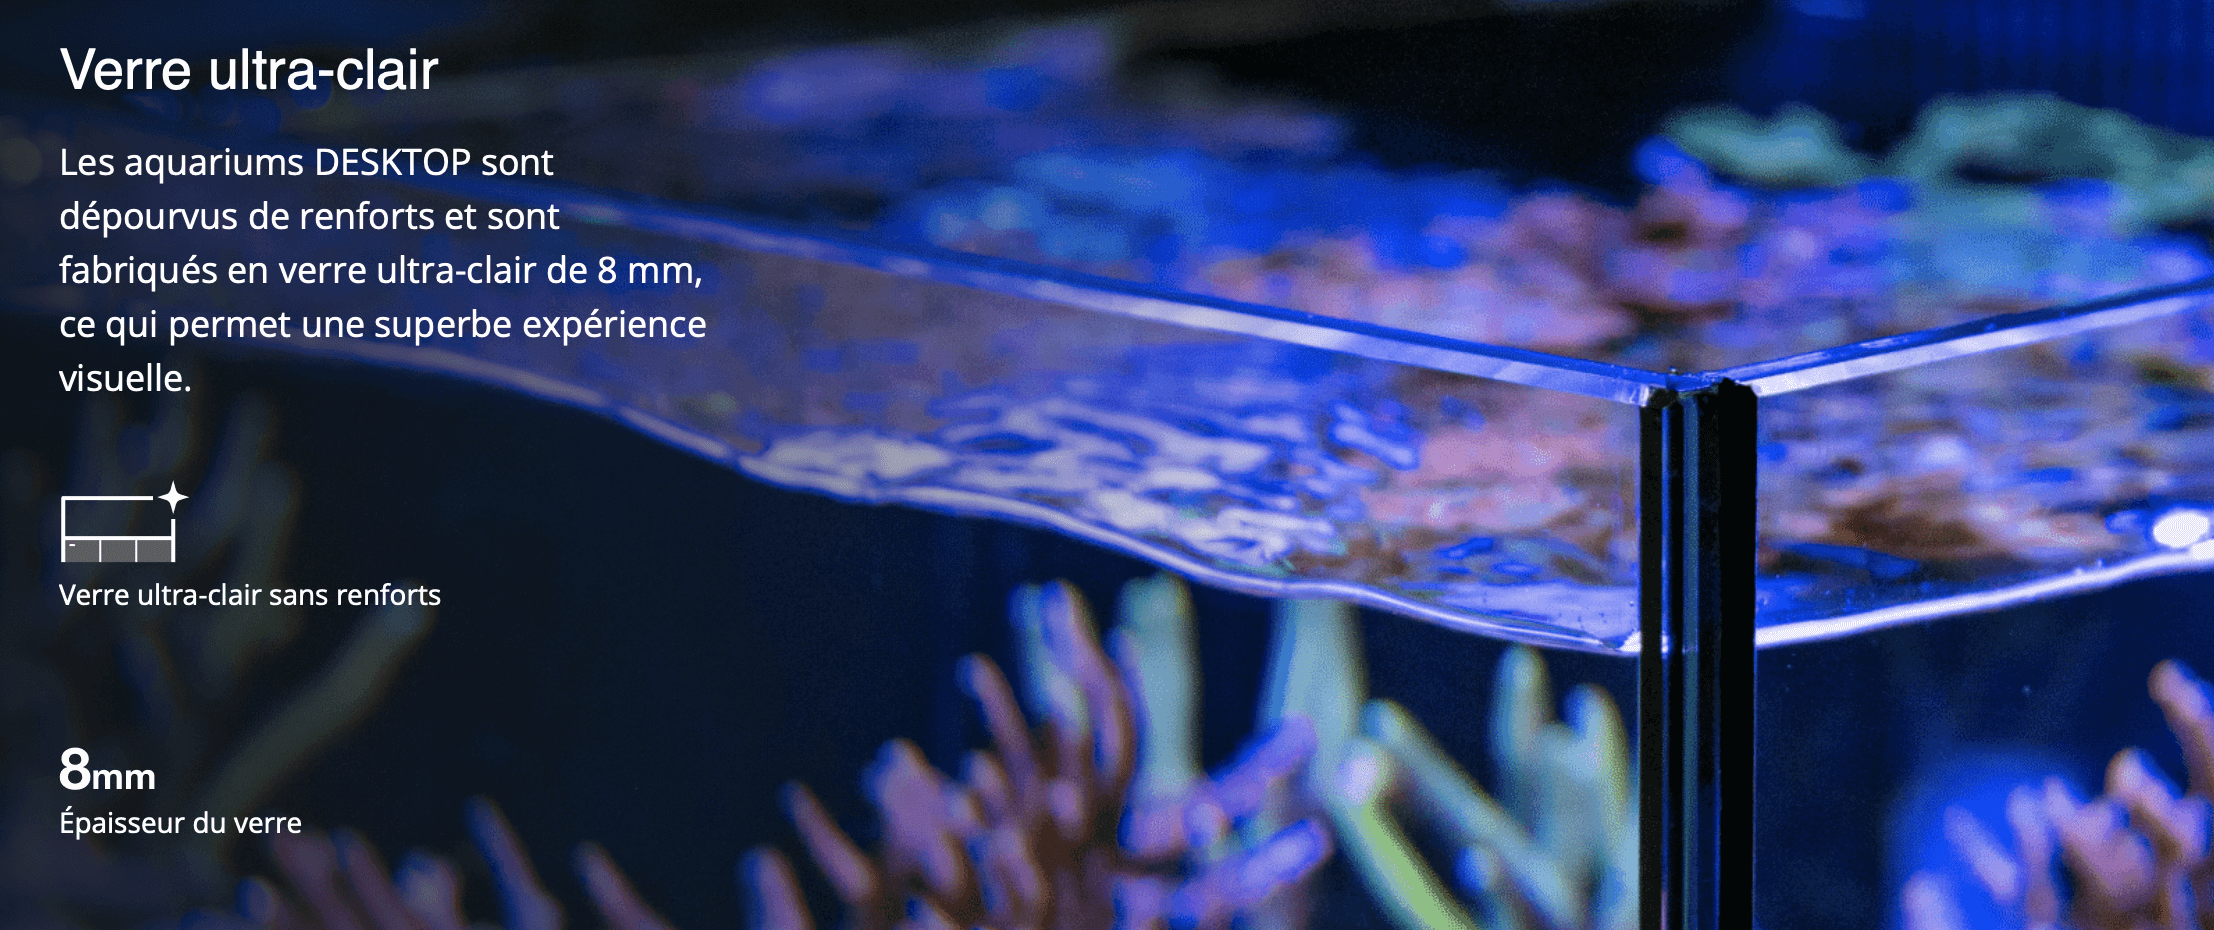 Verre ultra-clair  Les aquariums DESKTOP sont dépourvus de renforts et sont fabriqués en verre ultra-clair de 8 mm, ce qui permet une superbe expérience visuelle.